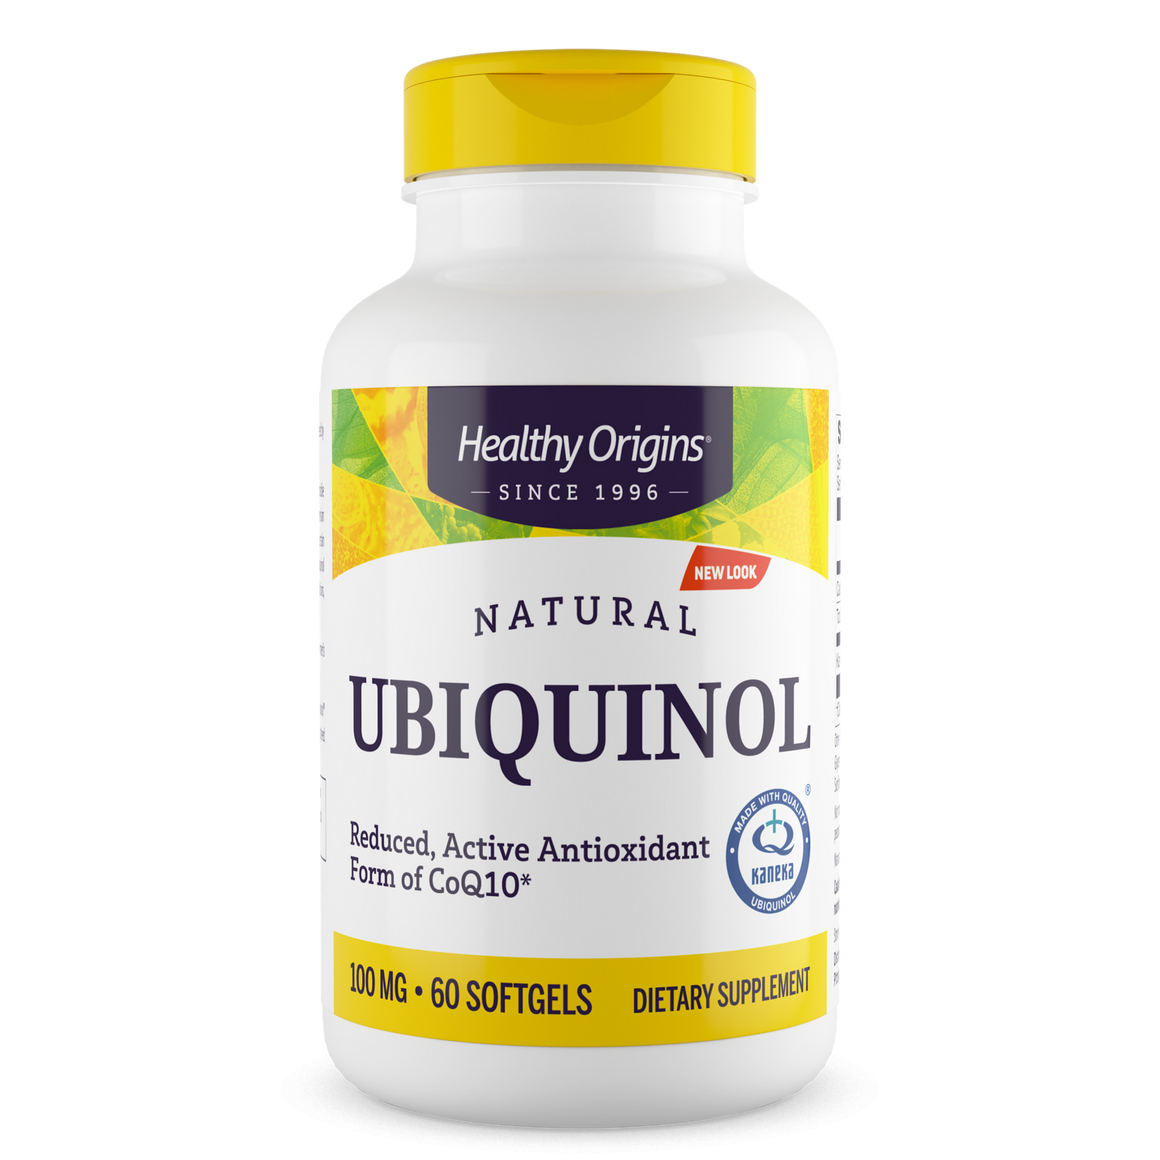 Healthy Origins Ubiquinol 100mg - 60 softgels